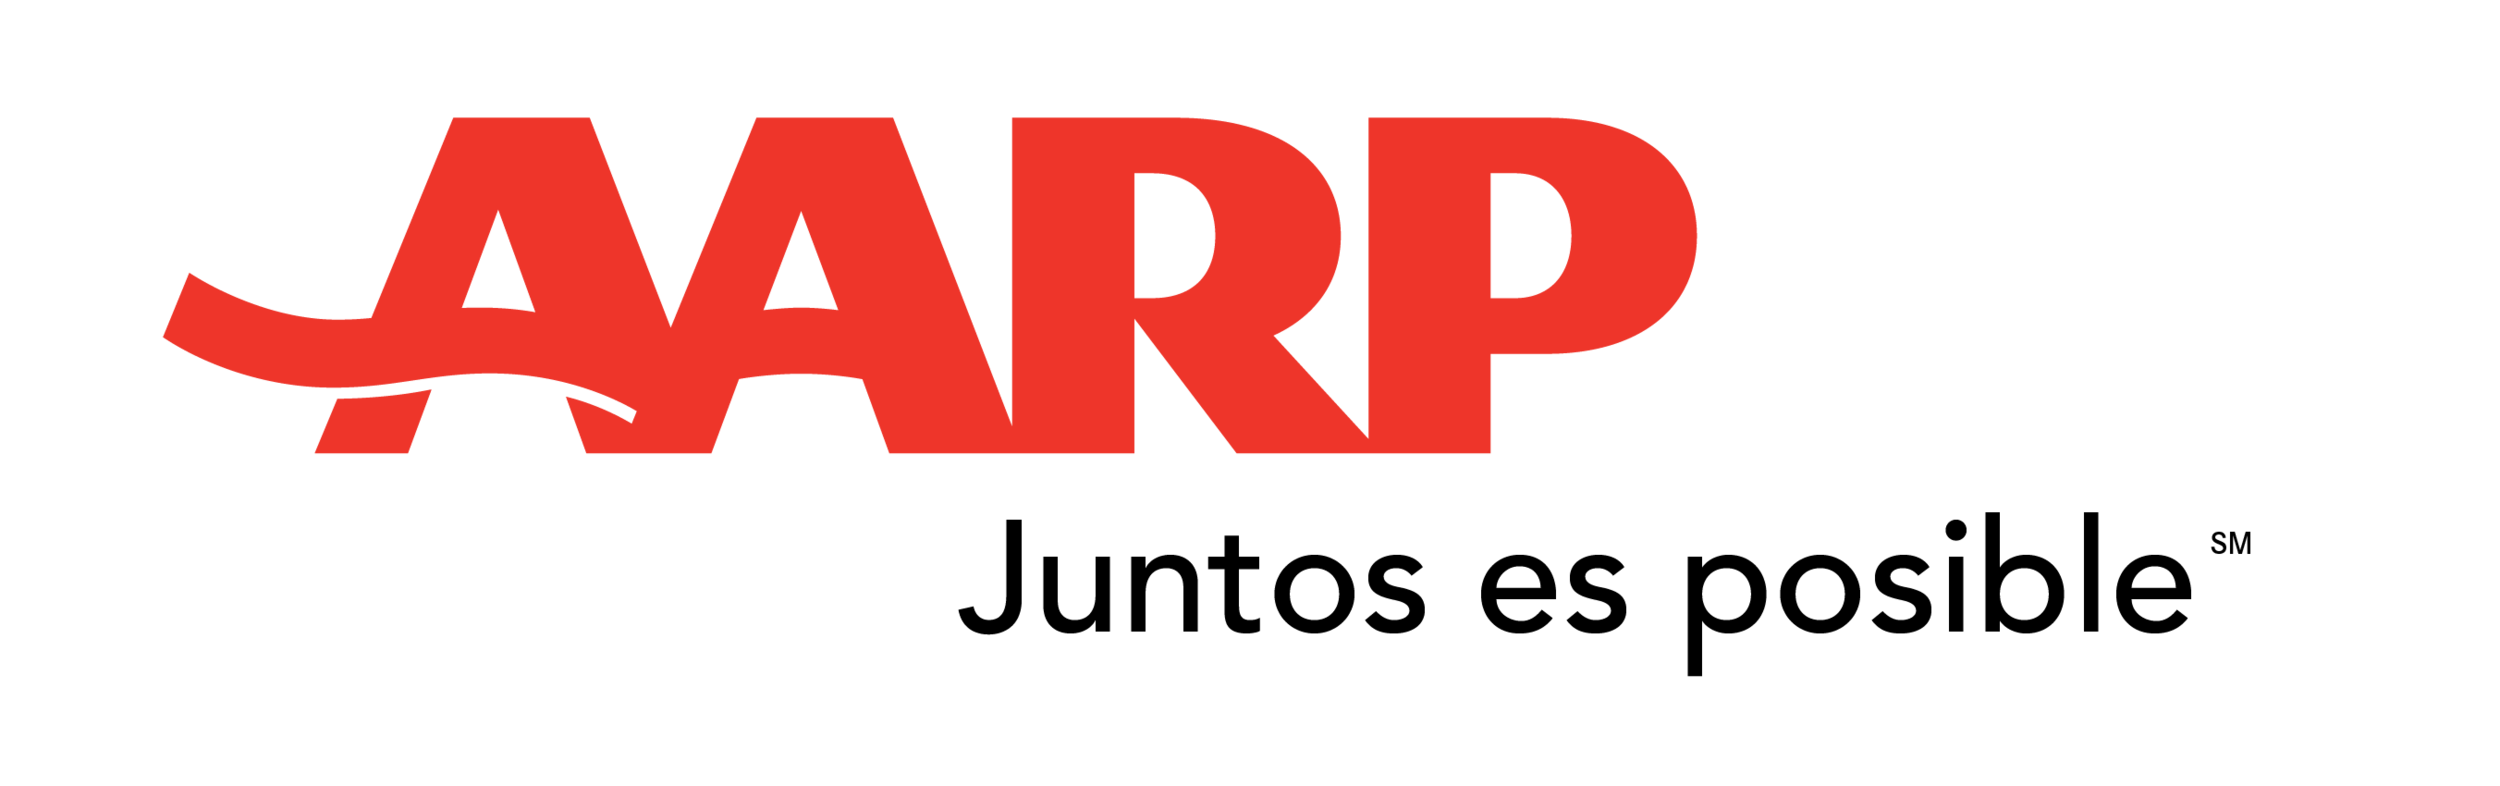 AARP-SP_logo-4c.png